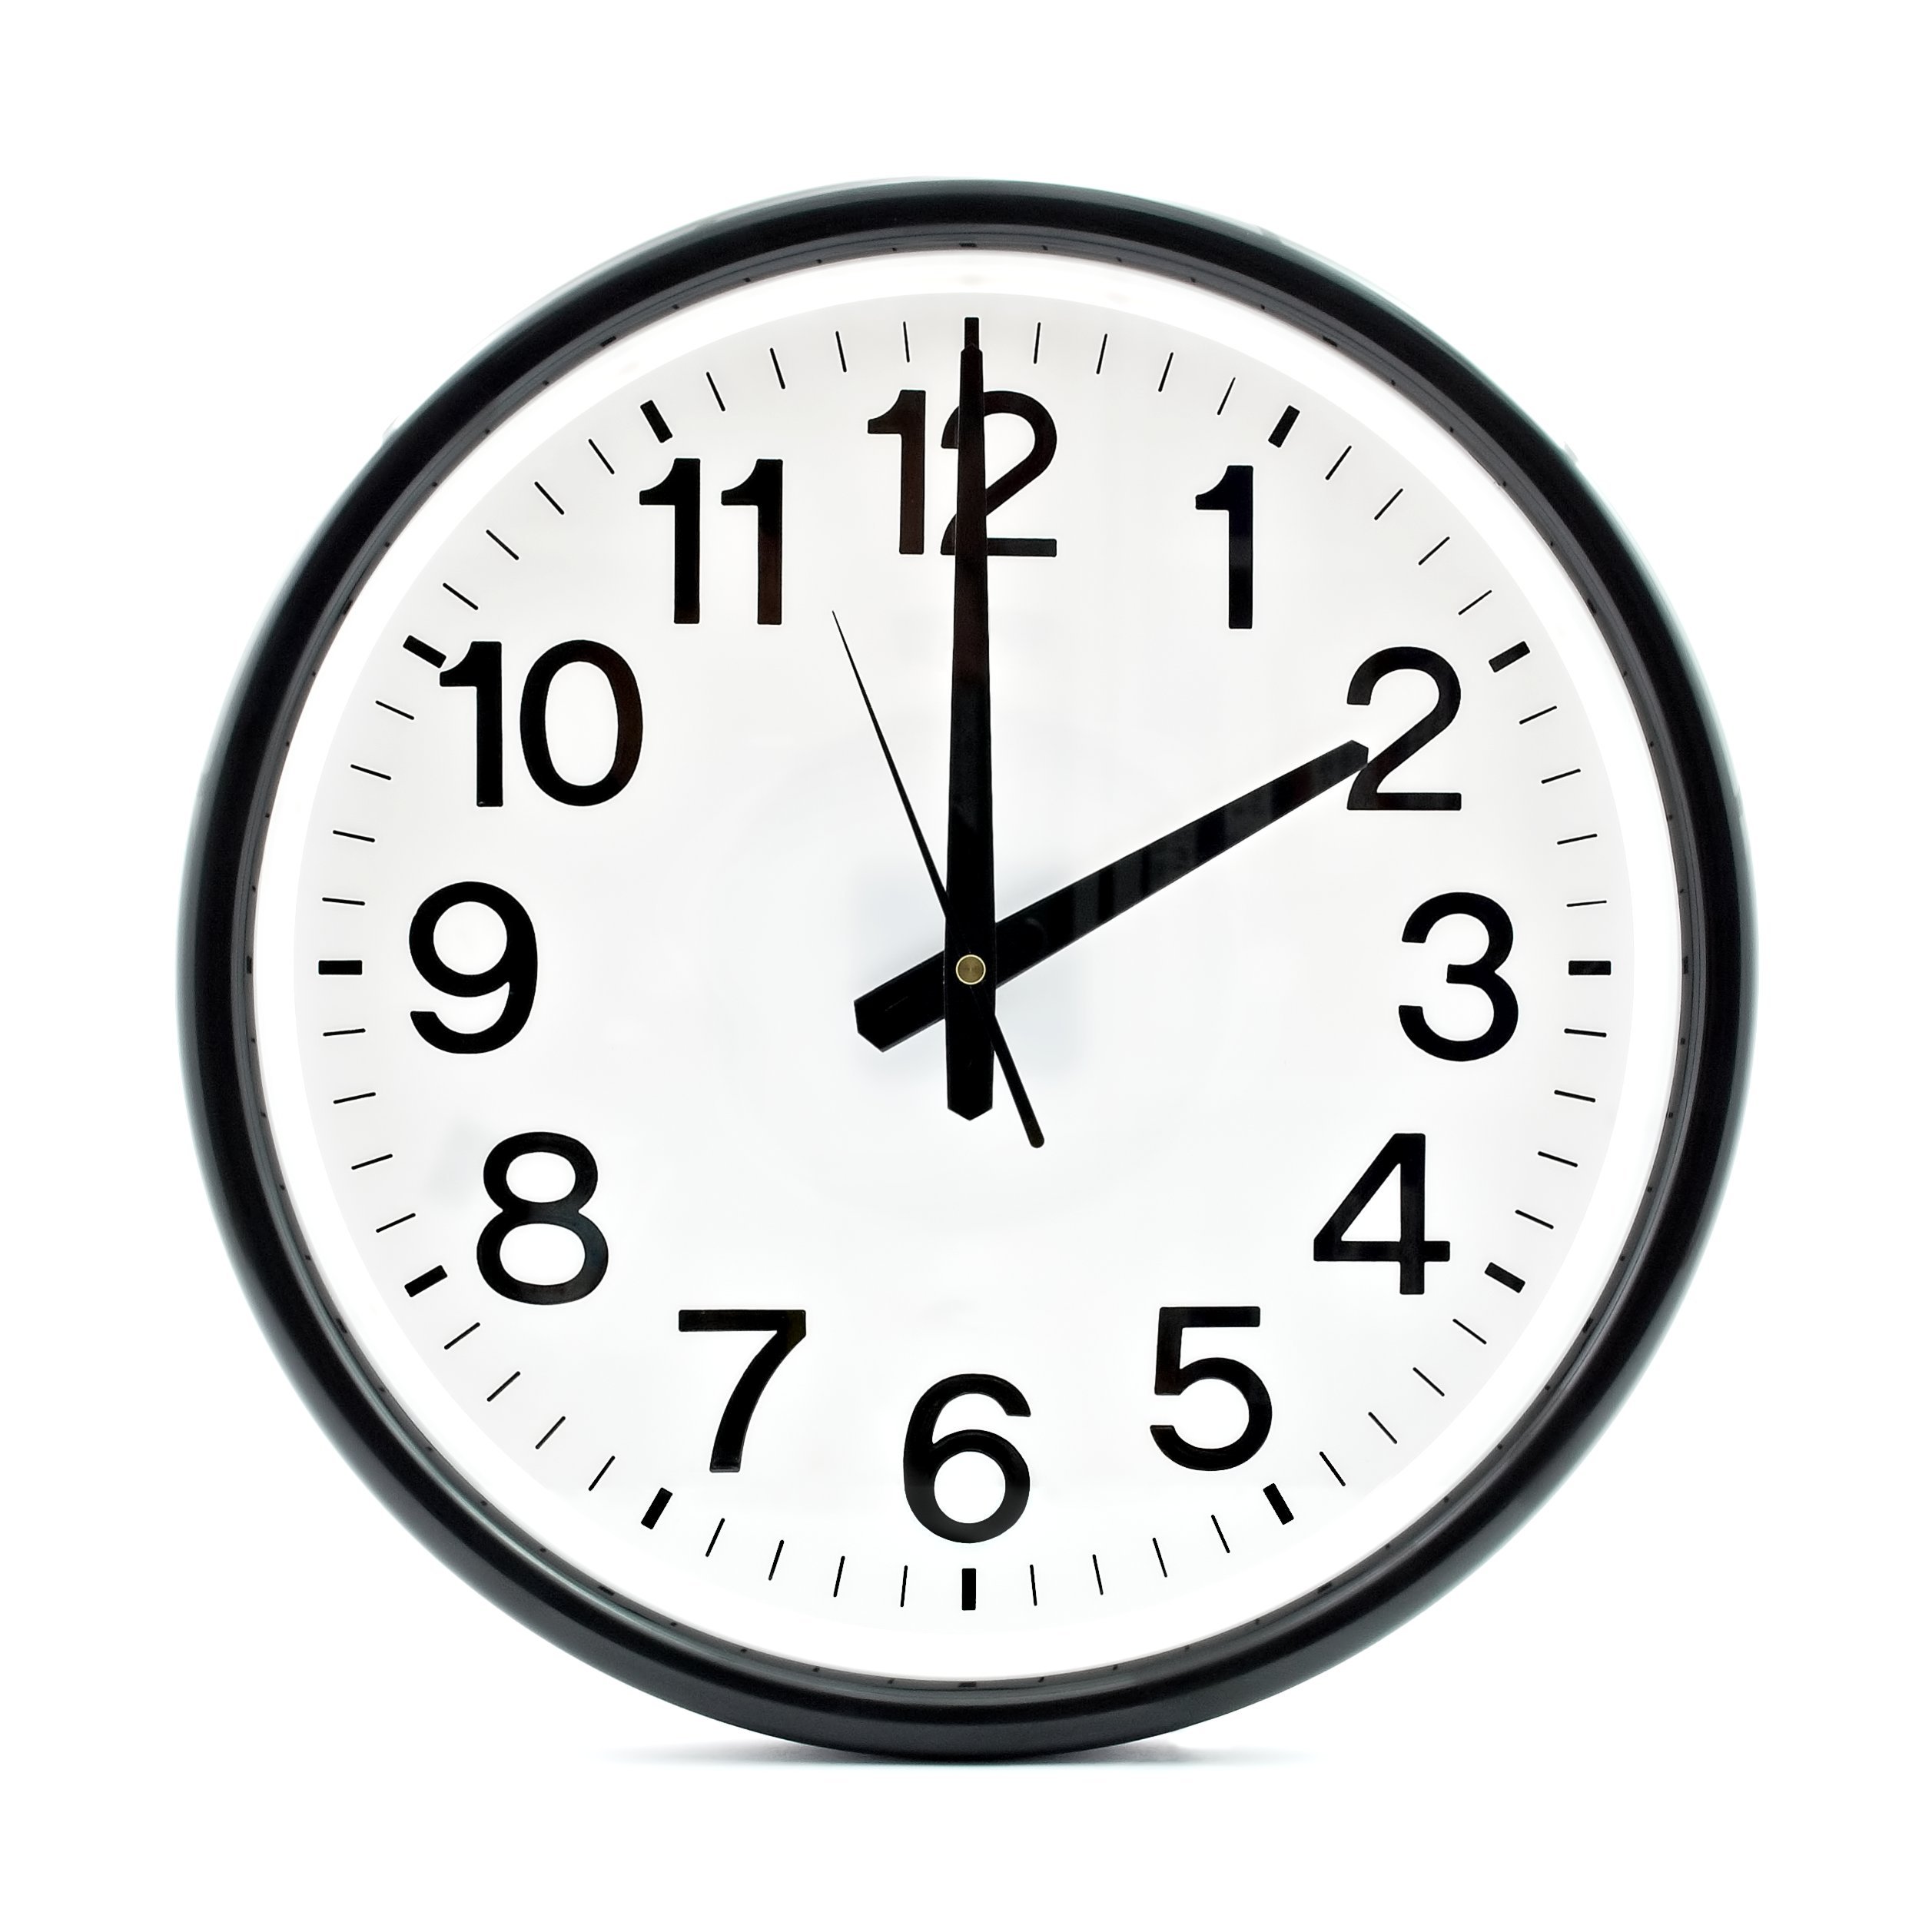 14 часов 28 минут. Часы 2 часа. Часы показывают 14:00. Часы два часа дня. Часы показывают 2 часа.